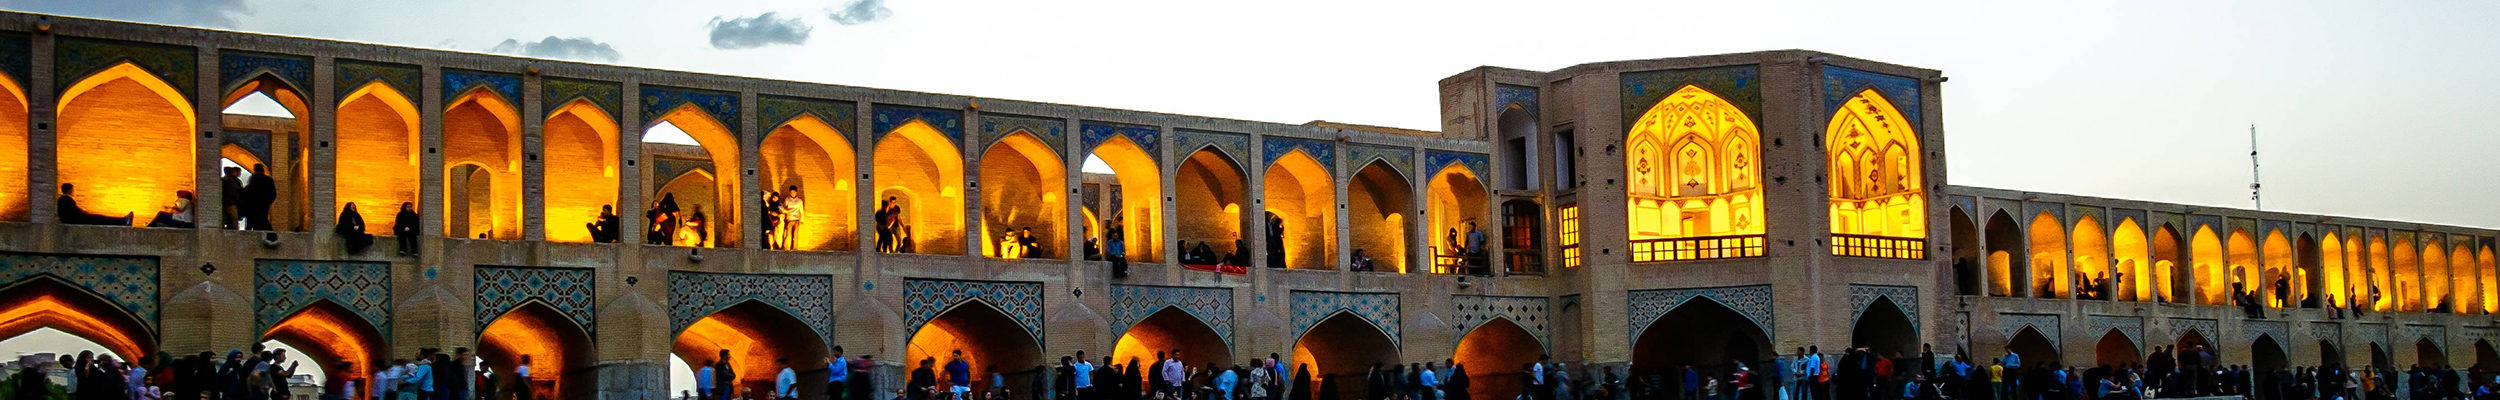 IVAO Iran